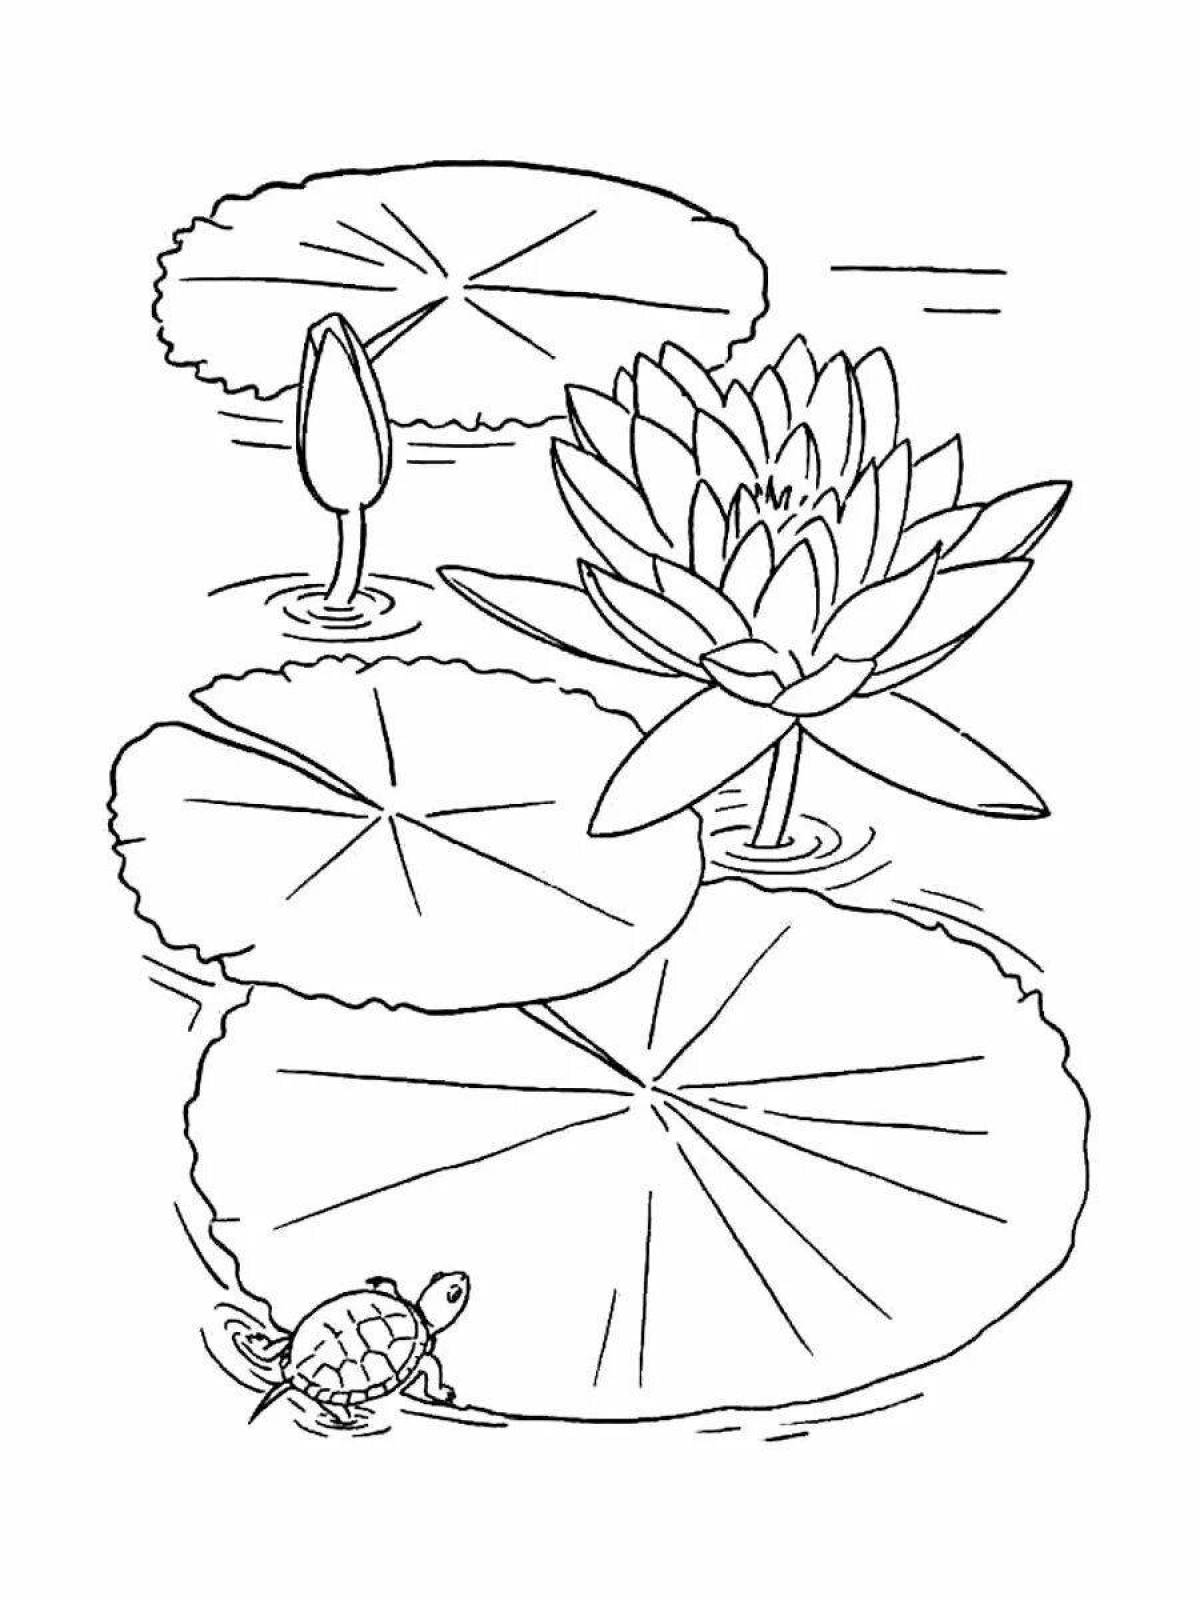 Coloring book joyful lotus for children